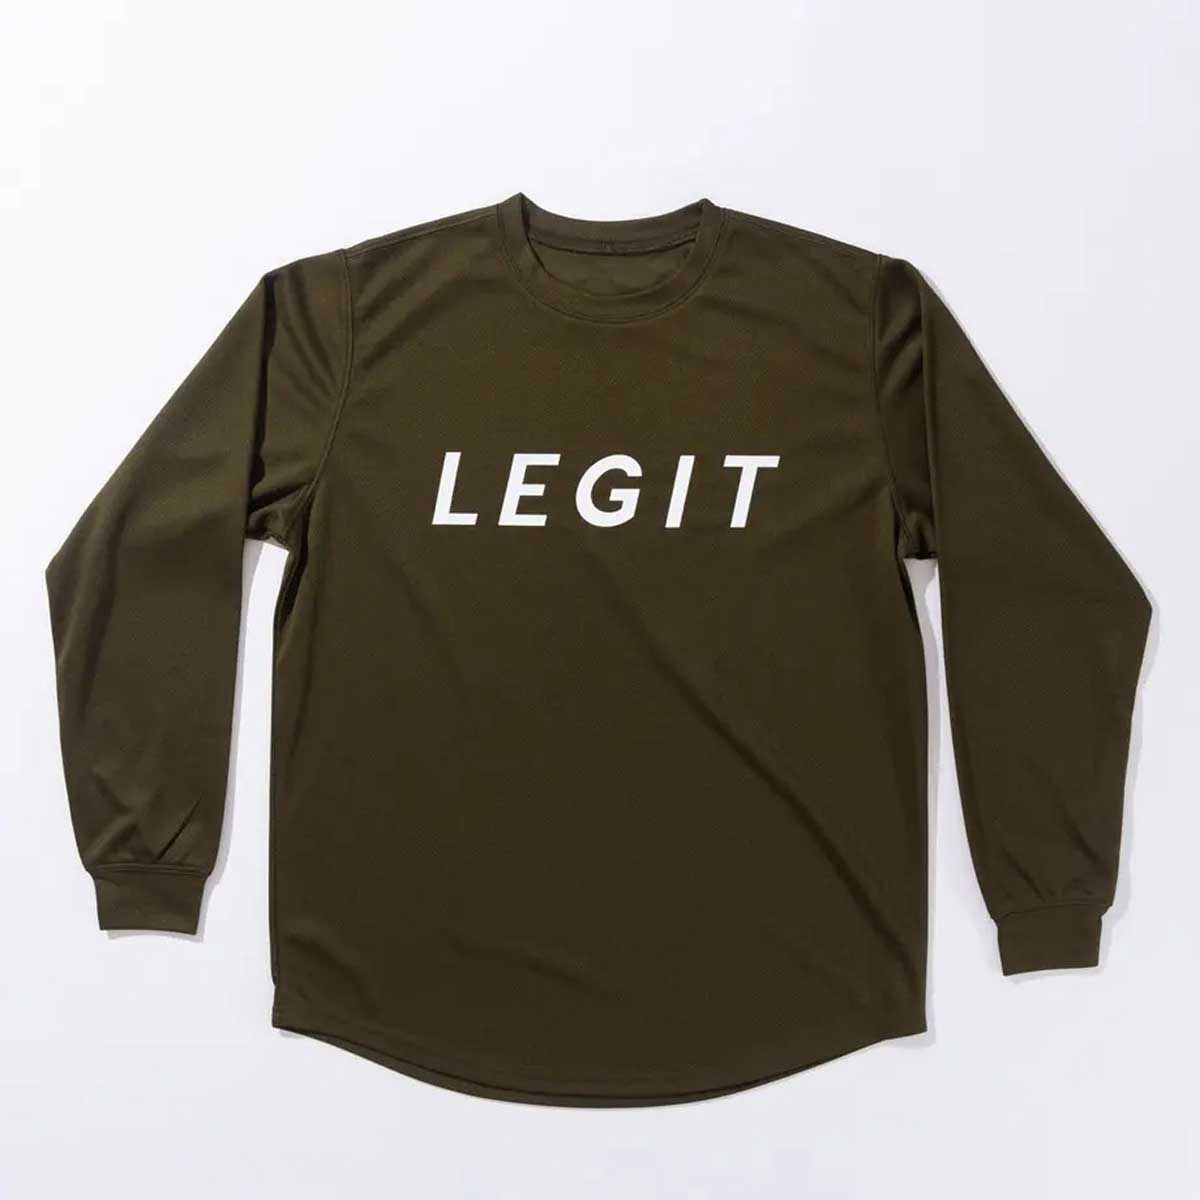 人気の新作LEGIT(レジット) 2202-1007 BORDERLESS L S バスケットシャツ ロンT ロングスリーブ メンズ レディース